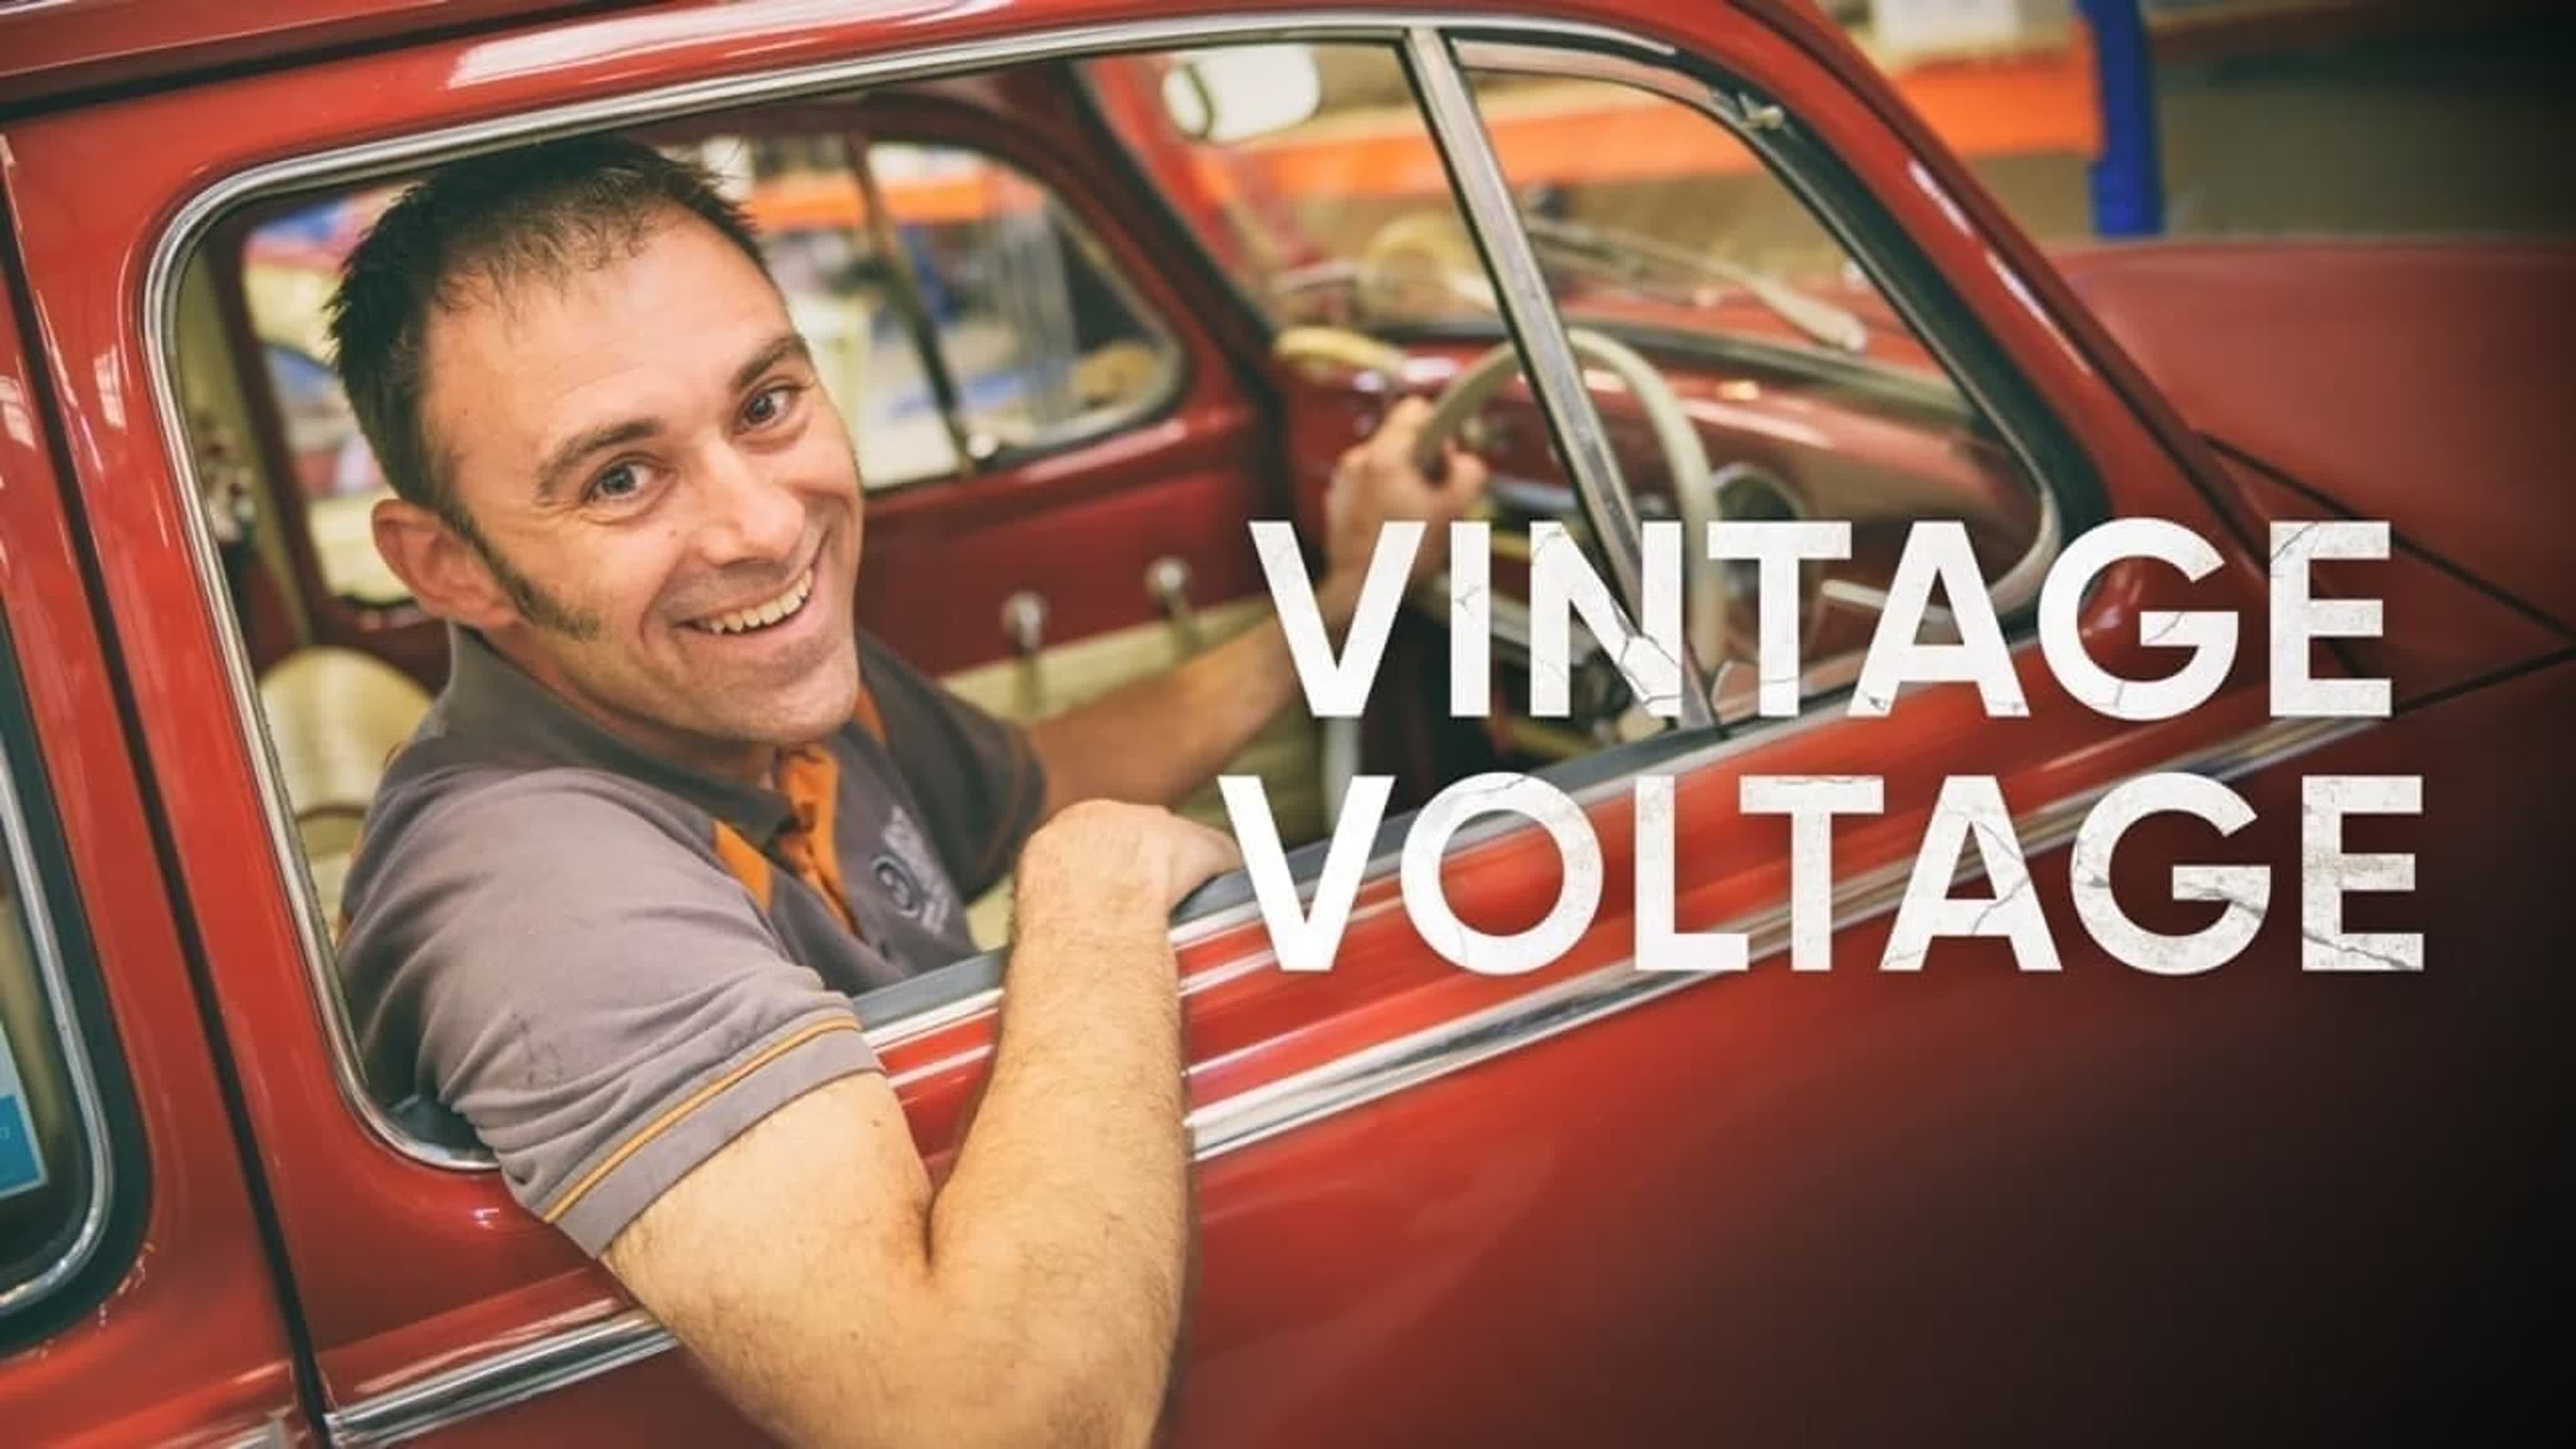 Винтажные электромобили / Vintage Voltage (2020)